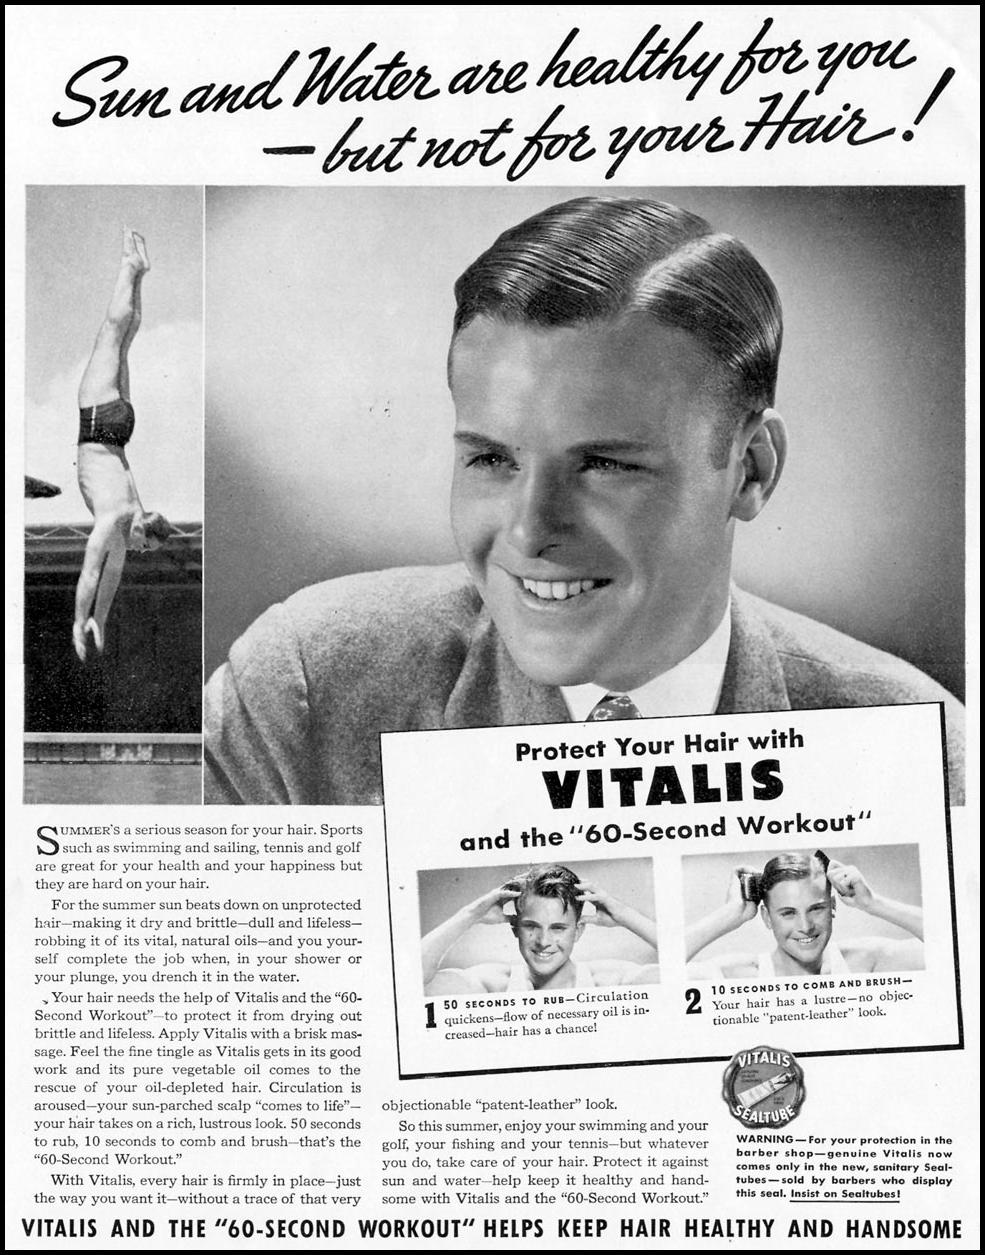 VITALIS HAIR TONIC
LIFE
08/09/1937
p. 16